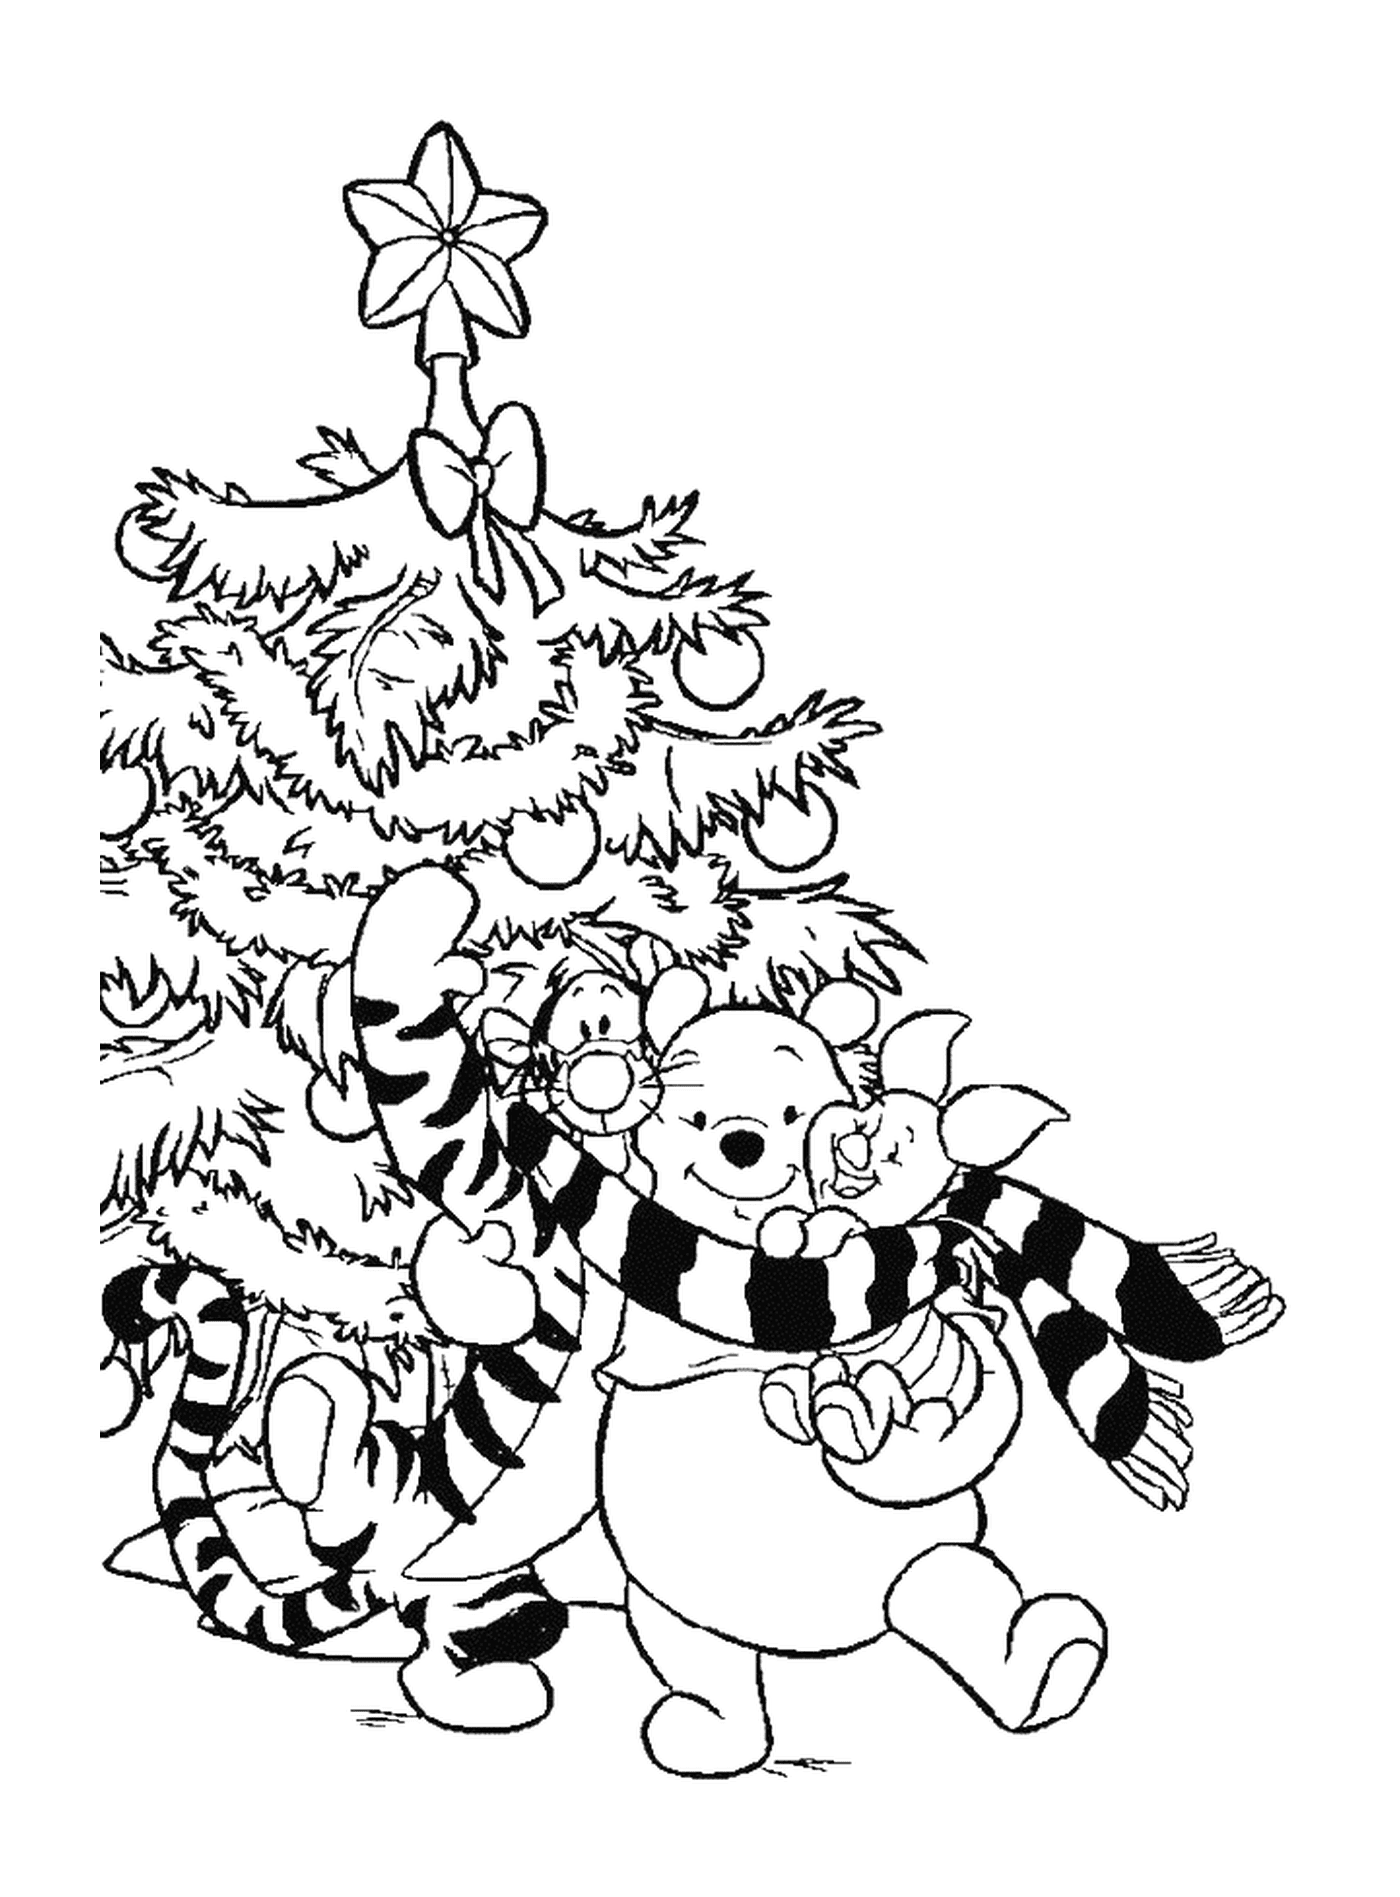  Уинни, Тигру и Порцинет перед рождественской елкой 